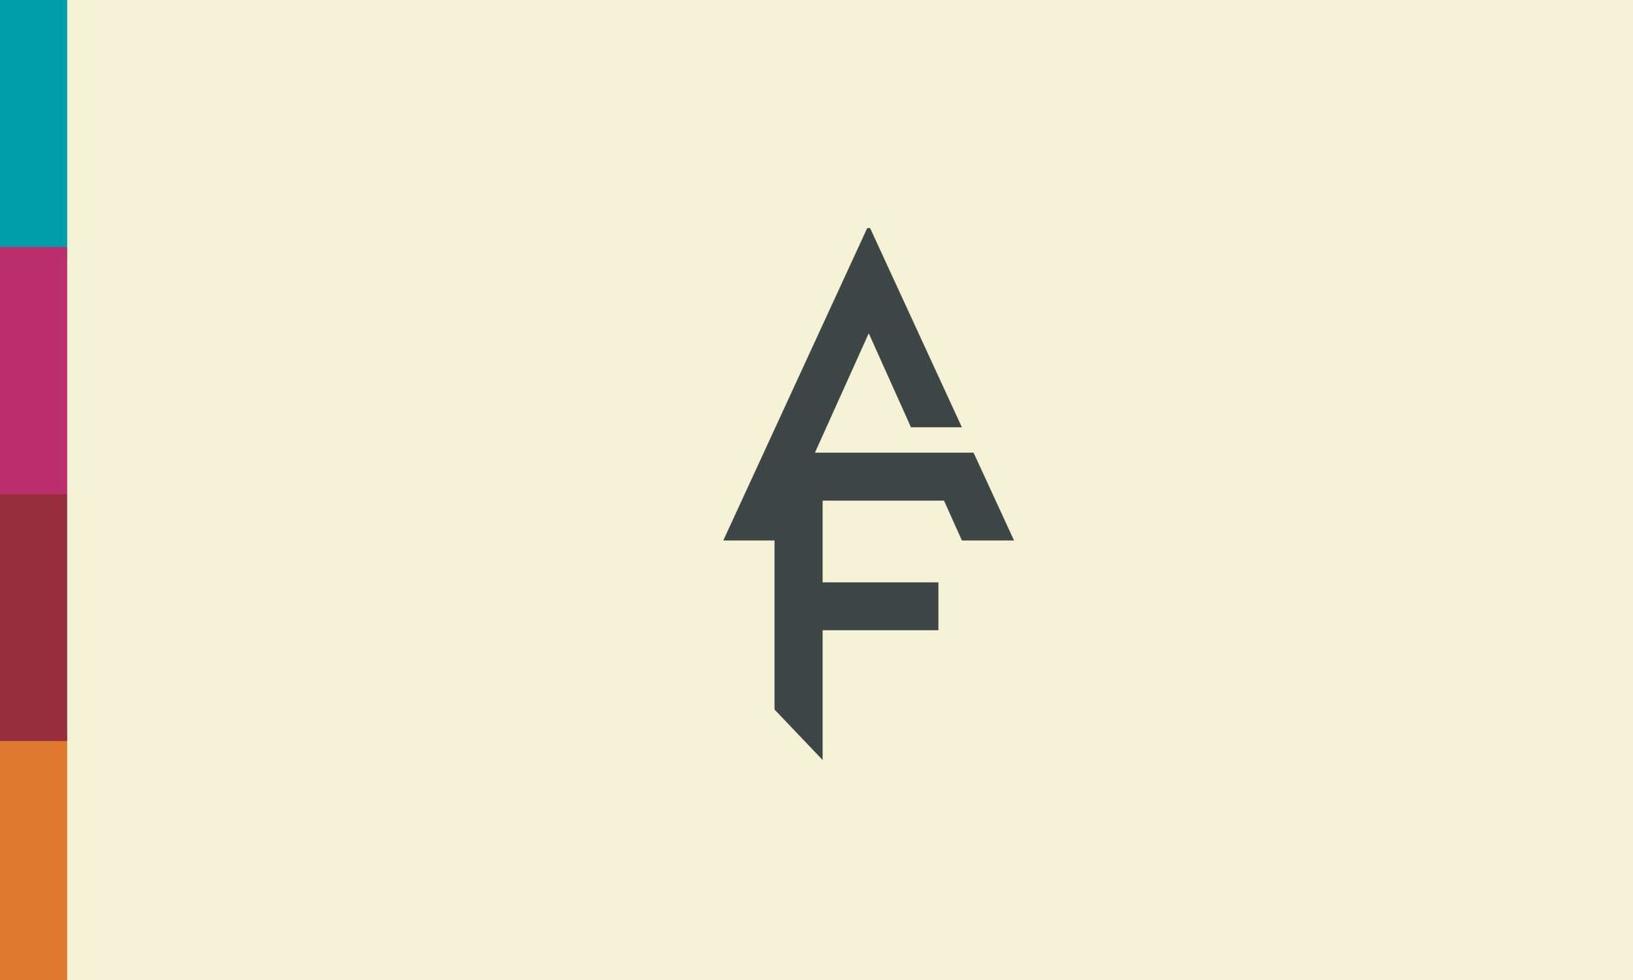 letras do alfabeto iniciais monograma logotipo af, fa, a e f vetor